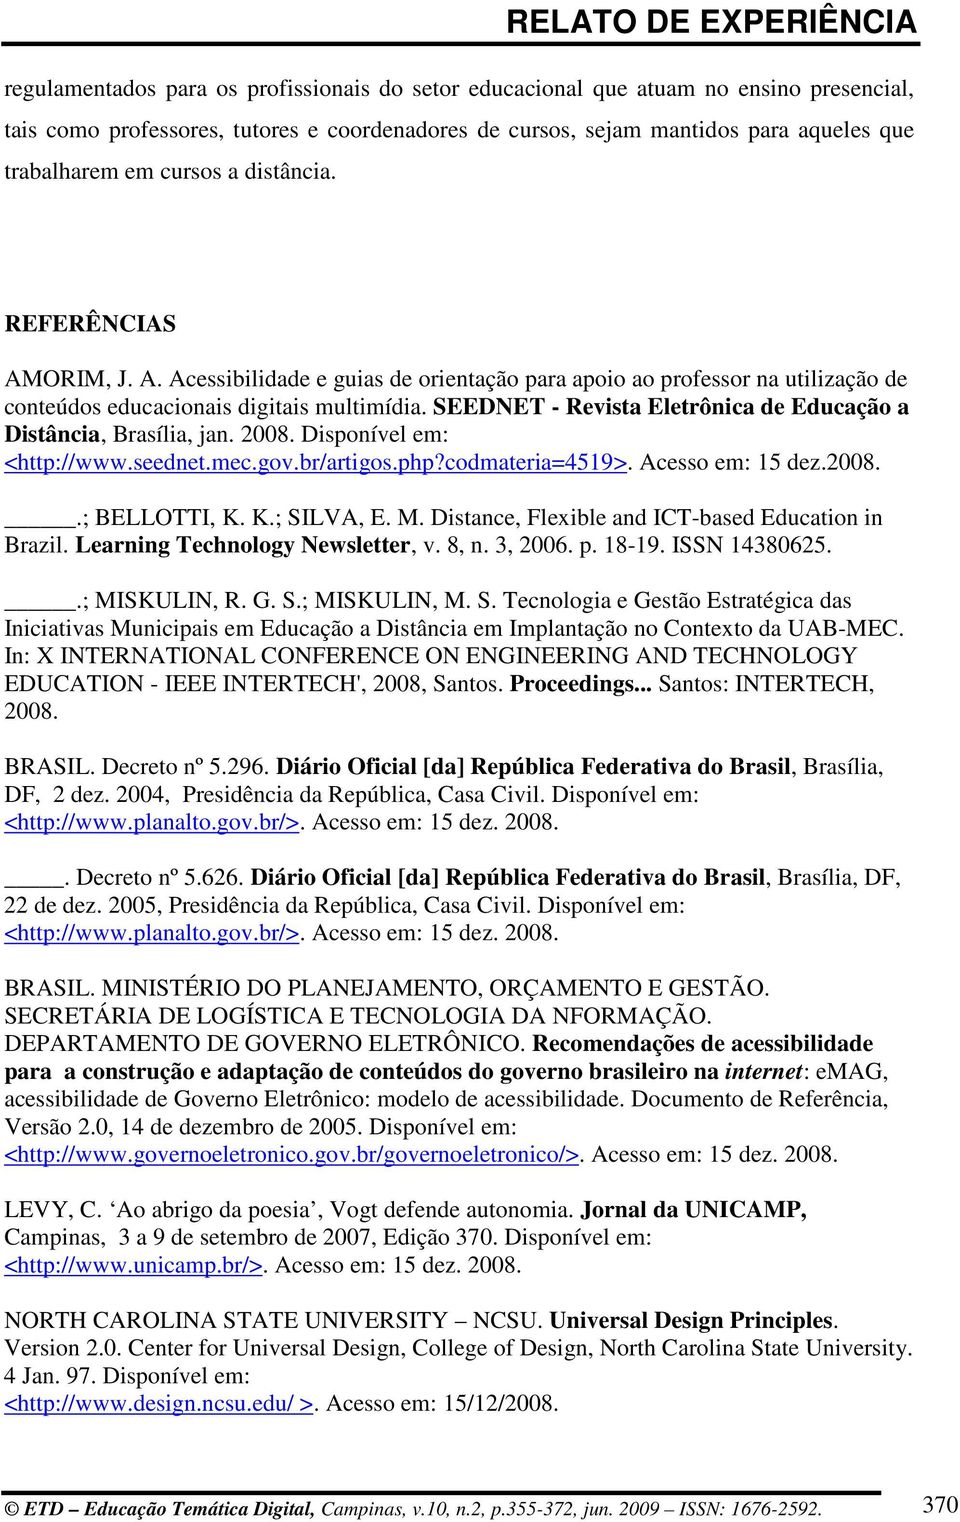 SEEDNET - Revista Eletrônica de Educação a Distância, Brasília, jan. 2008. Disponível em: <http://www.seednet.mec.gov.br/artigos.php?codmateria=4519>. Acesso em: 15 dez.2008..; BELLOTTI, K. K.; SILVA, E.